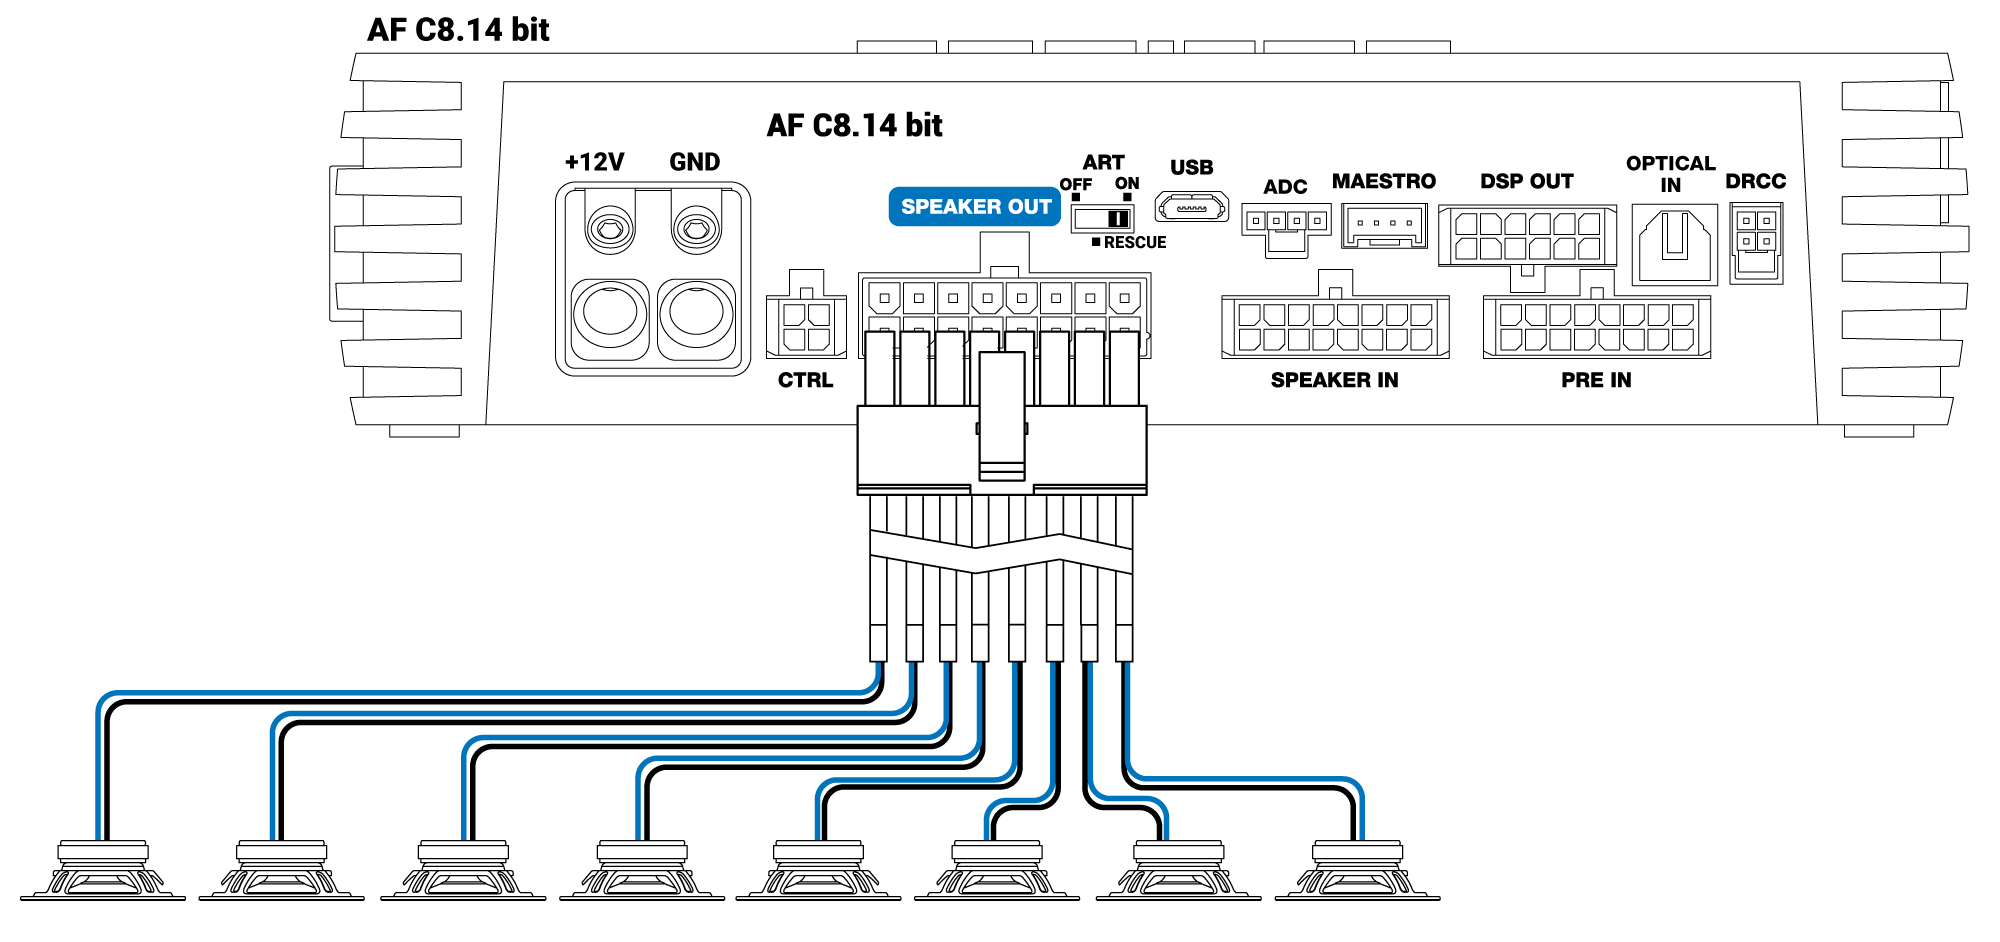 Speaker-out-AF-C8.14-bit.png